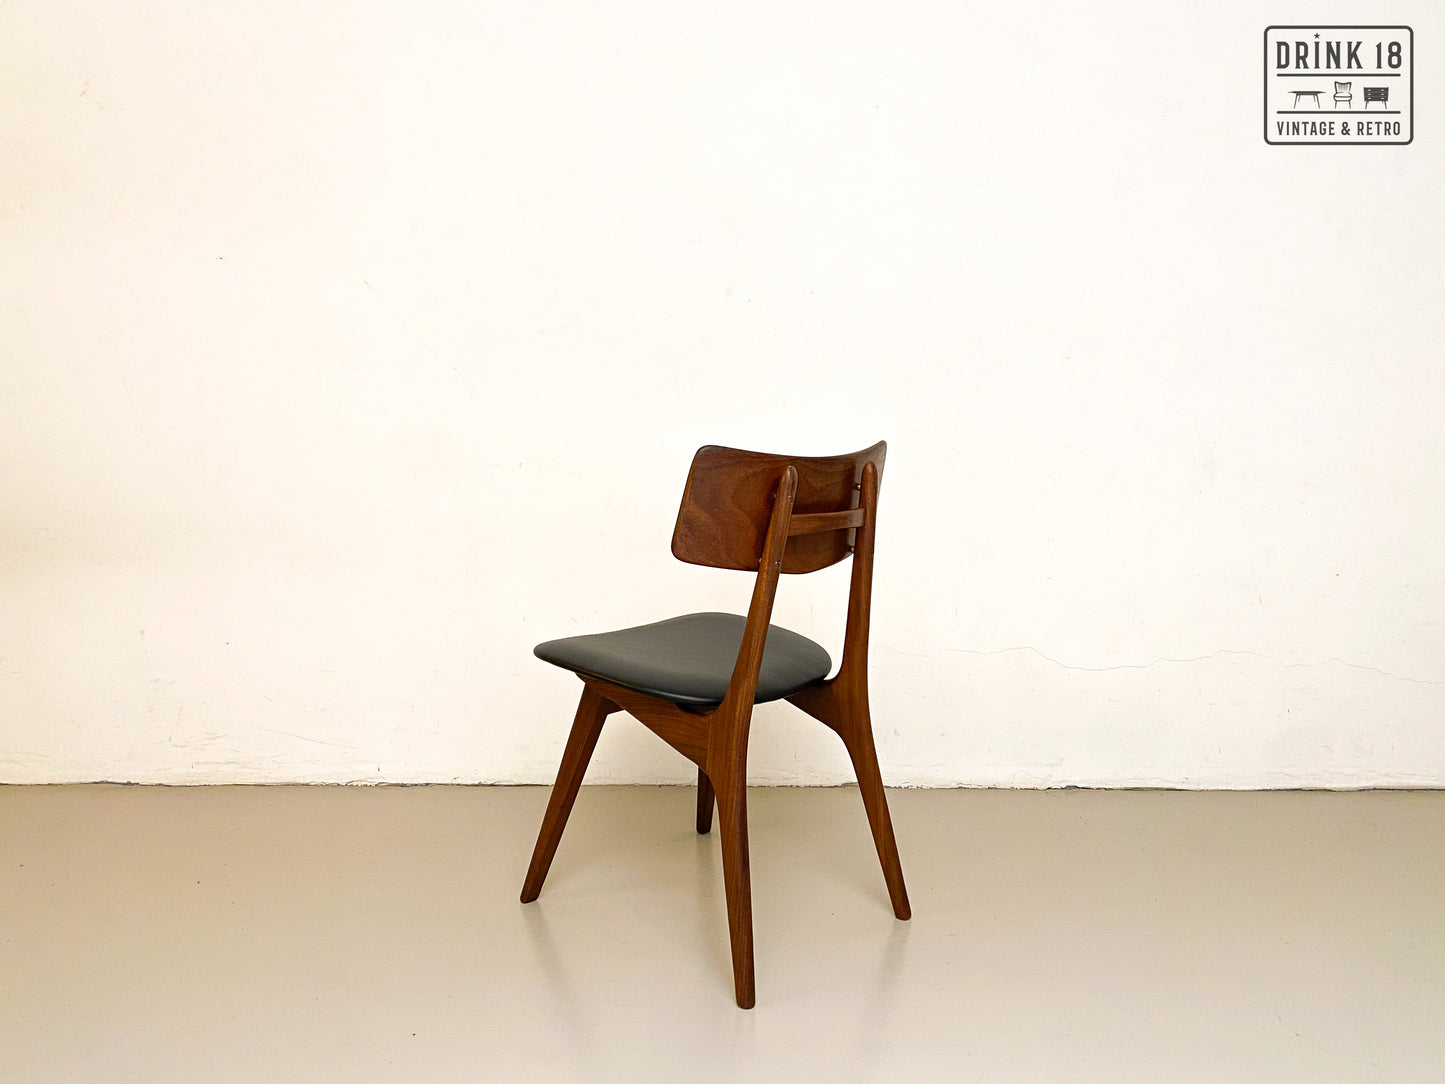 Vier Stravanger stoelen - Louis van Teeffelen